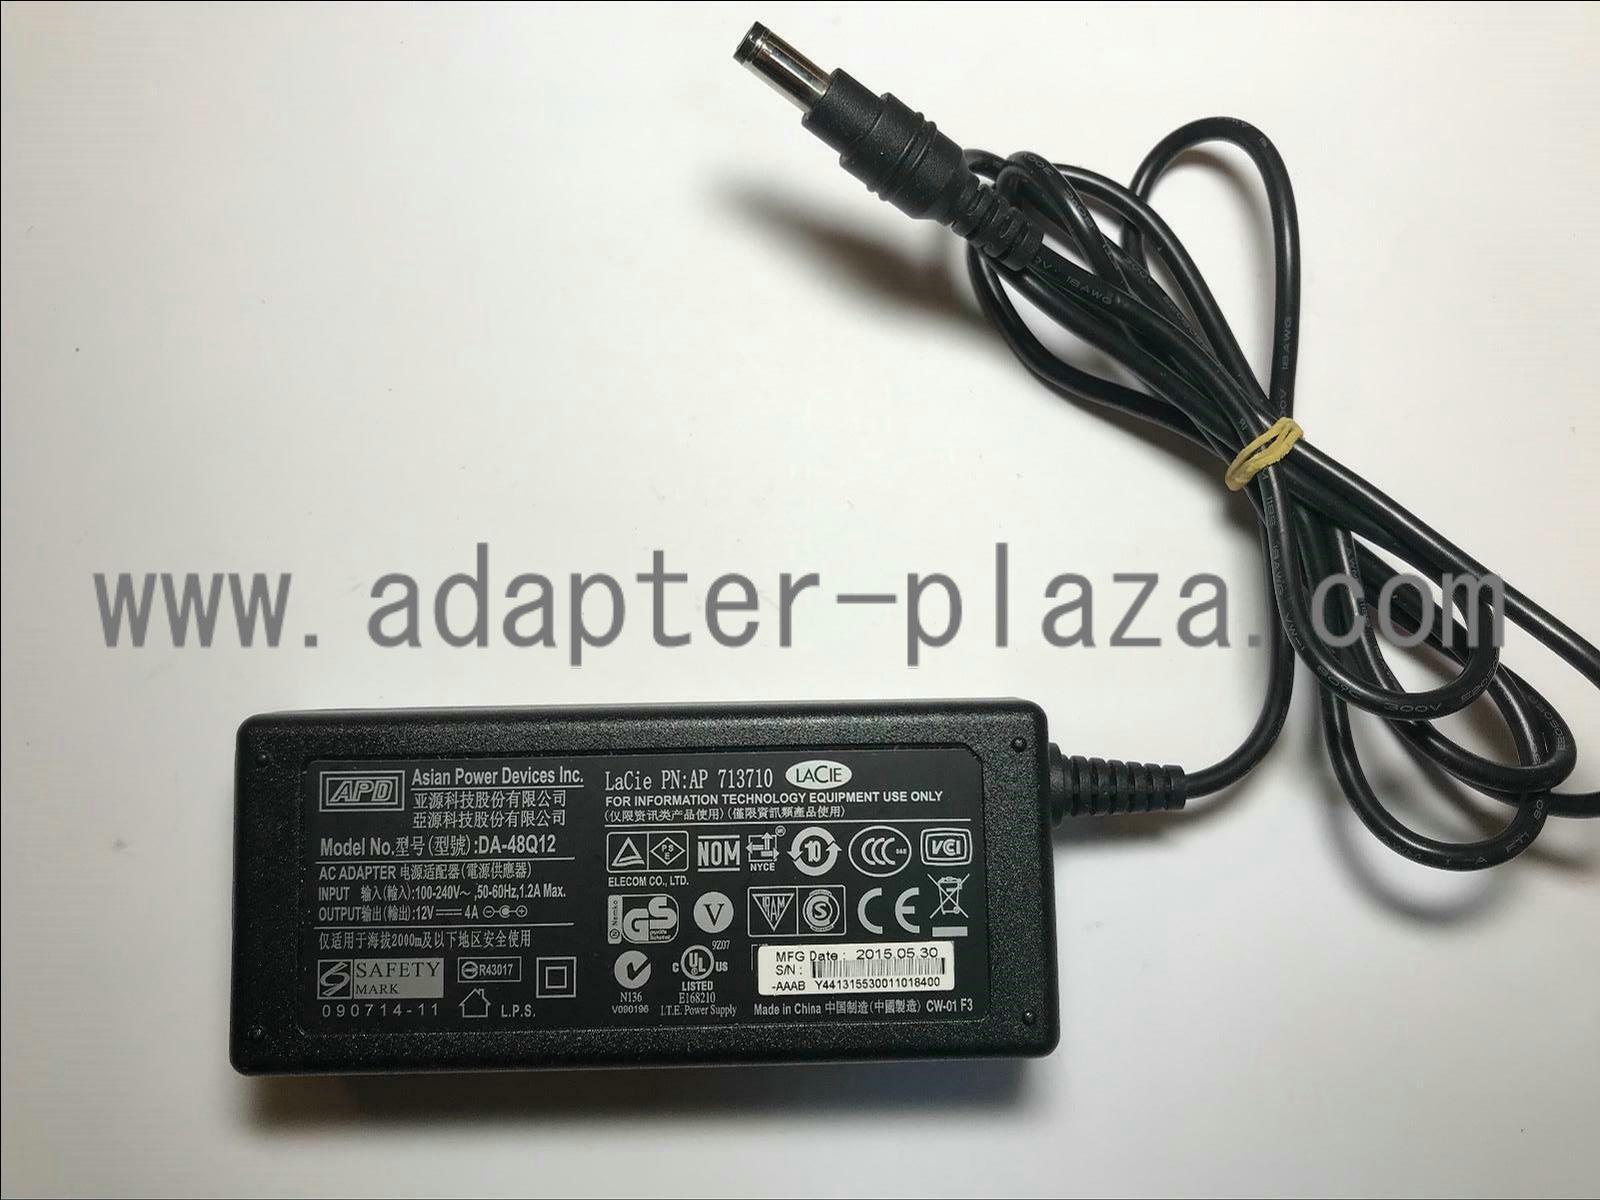 NEW Original APD 12V 4A DA-48Q12 AC Adapter for Lacie PN 713710 POWER DEVICES - Click Image to Close